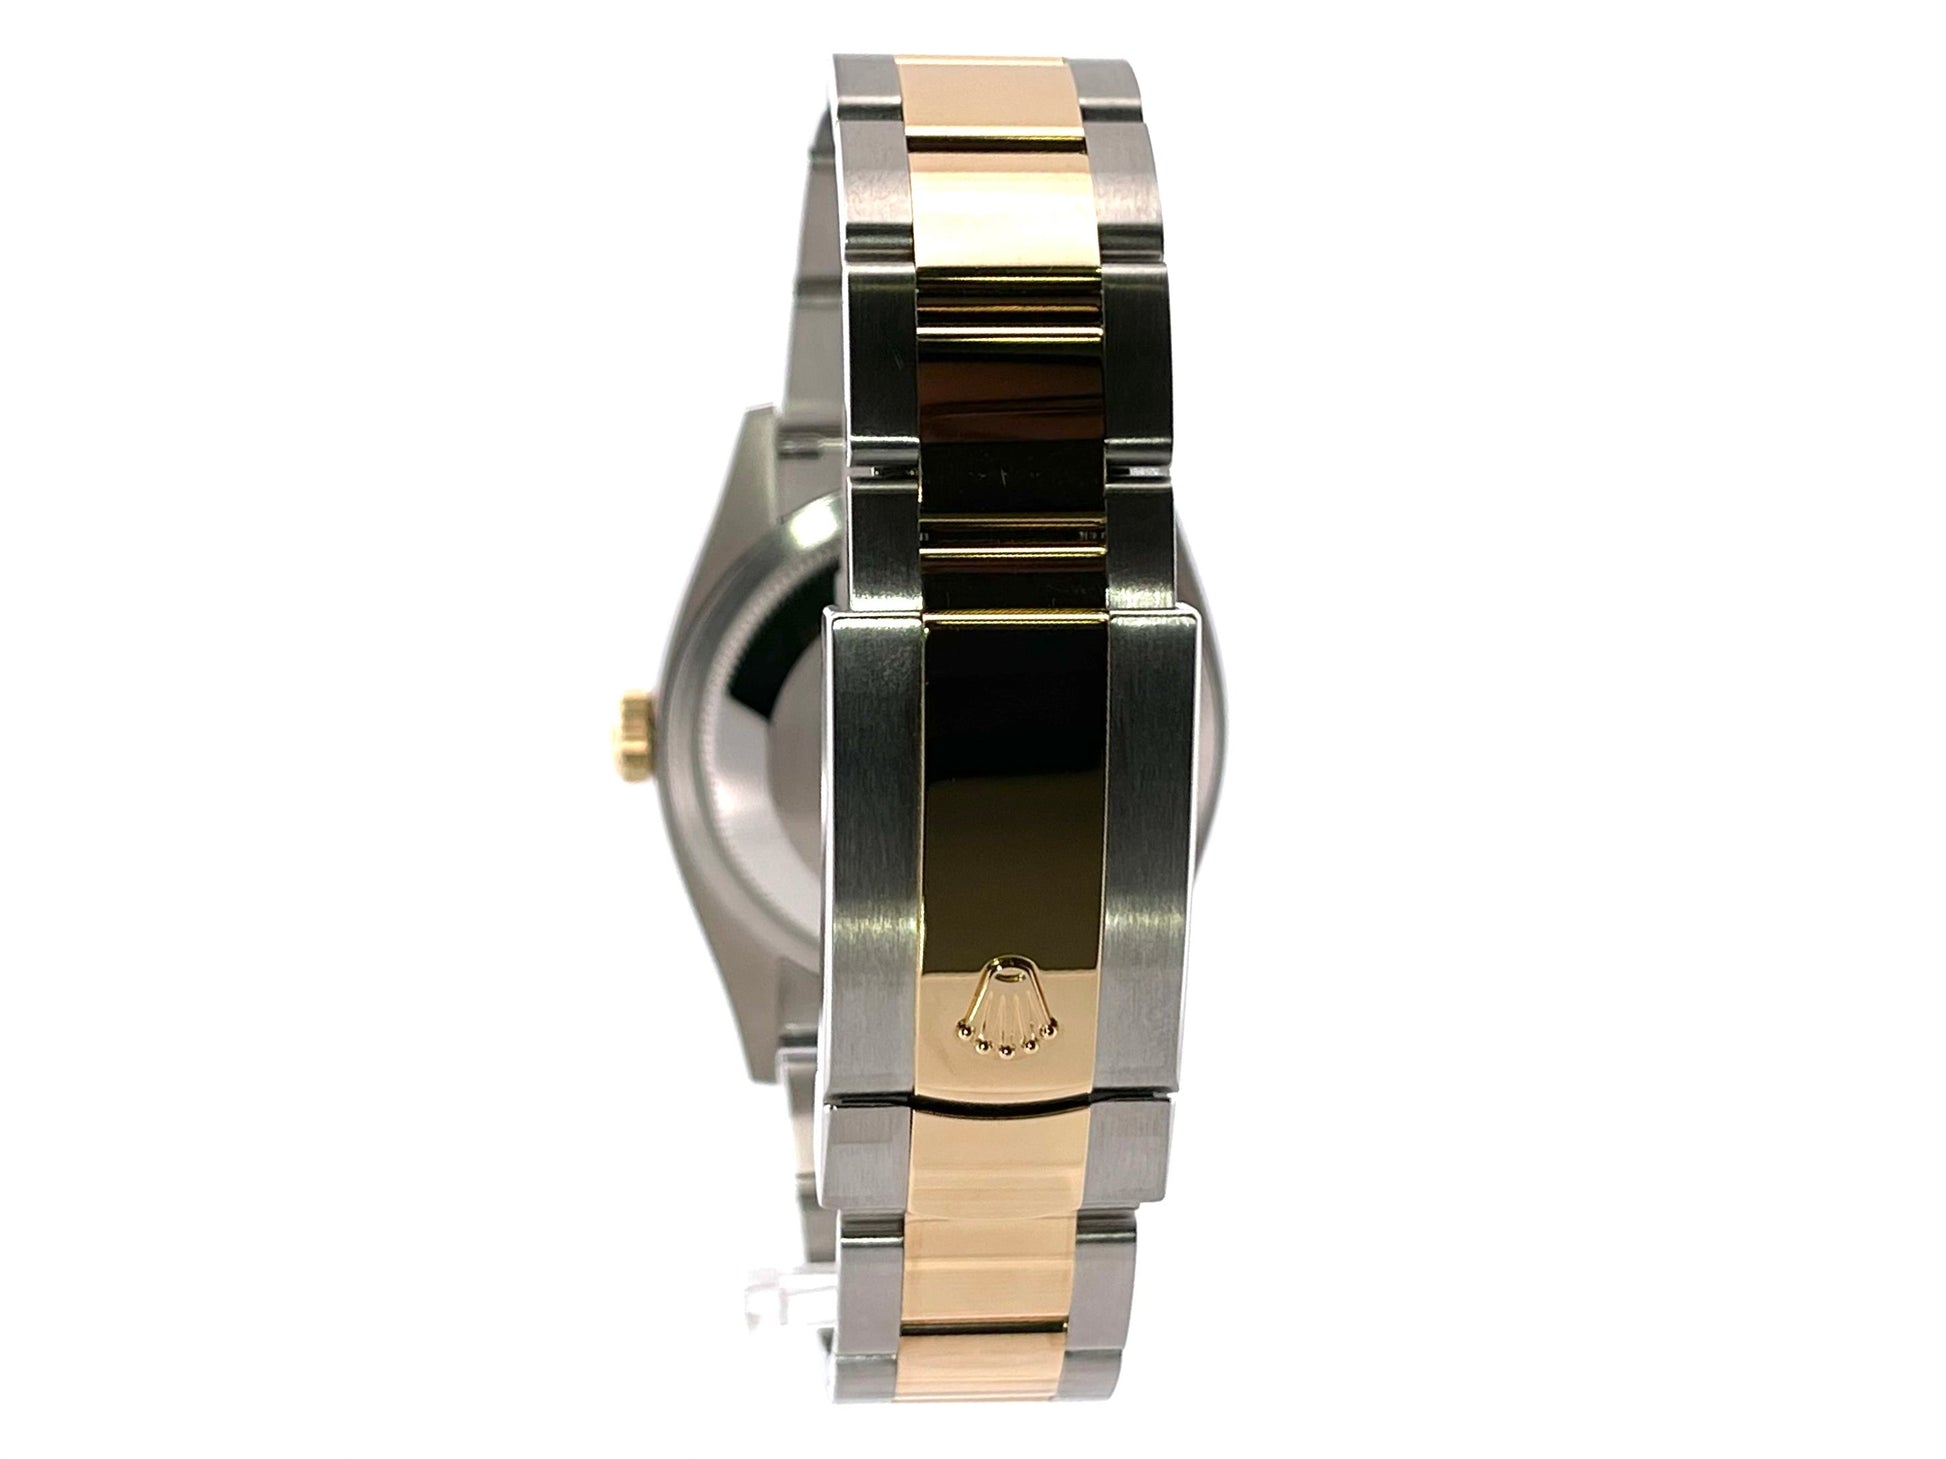 Rolex Datejust Diamonds Champagne Dial Two Tone Jubilee Bracelet Watch for Women - M126233-0034